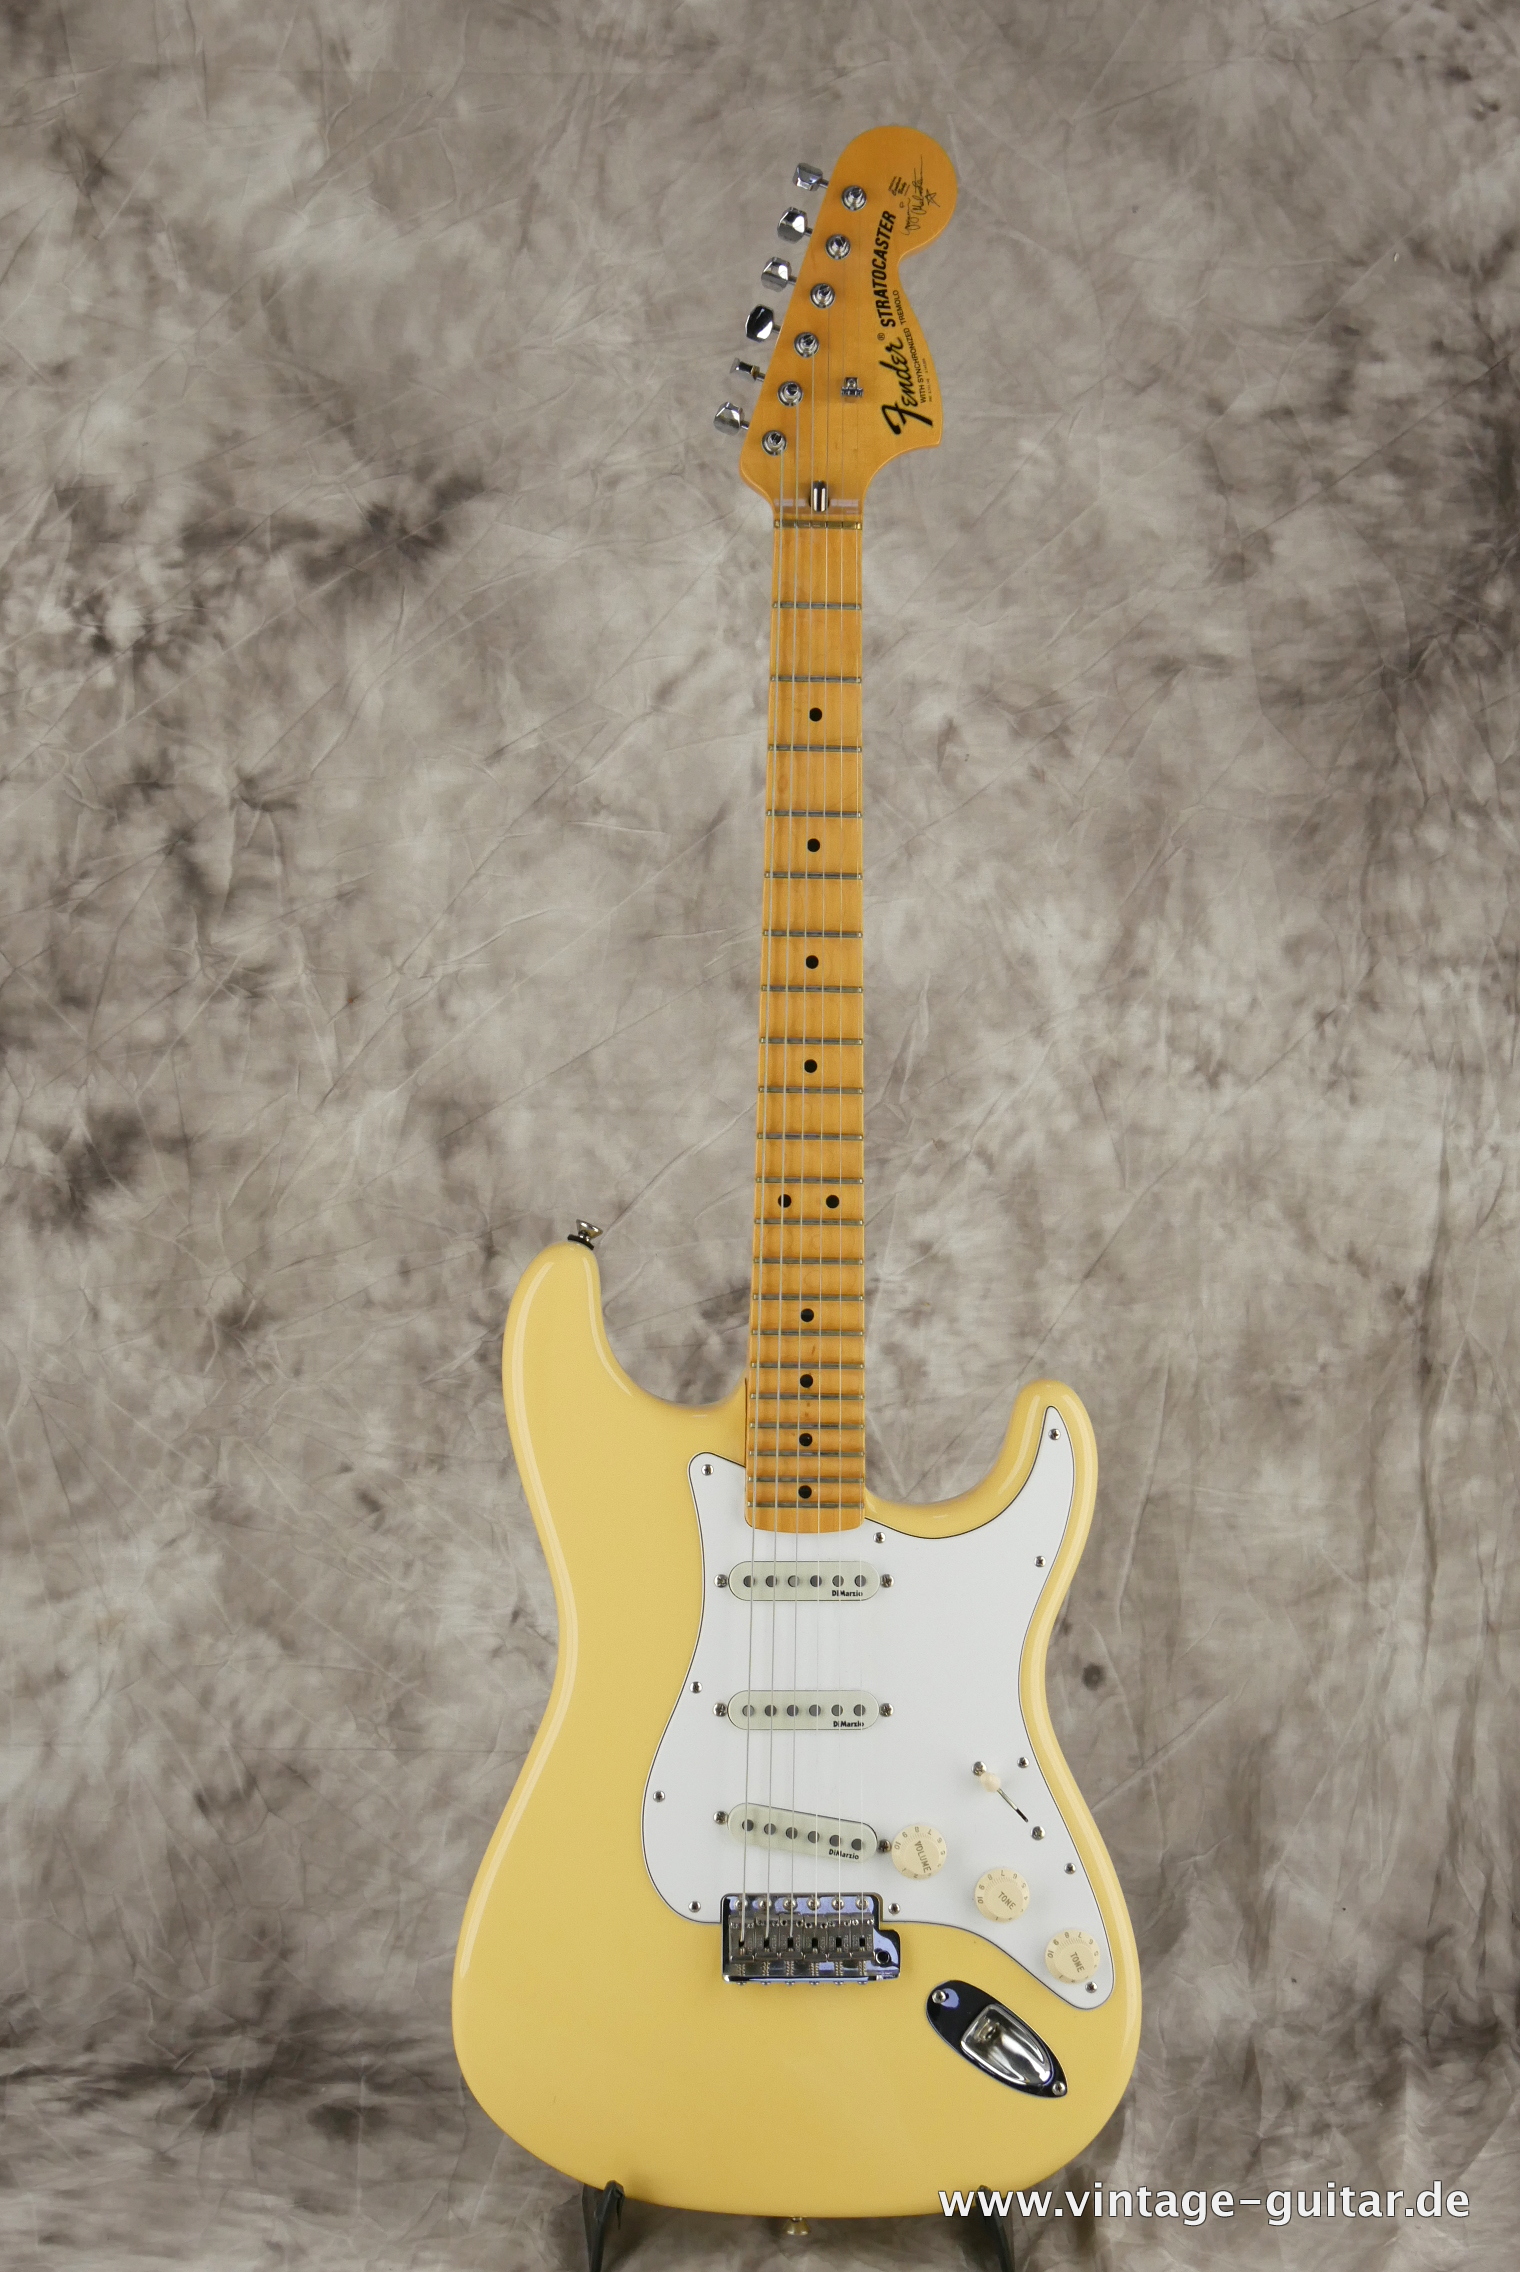 Fender-Stratocaster-Yngwie_malmsteen-2007-scalloped-001.JPG